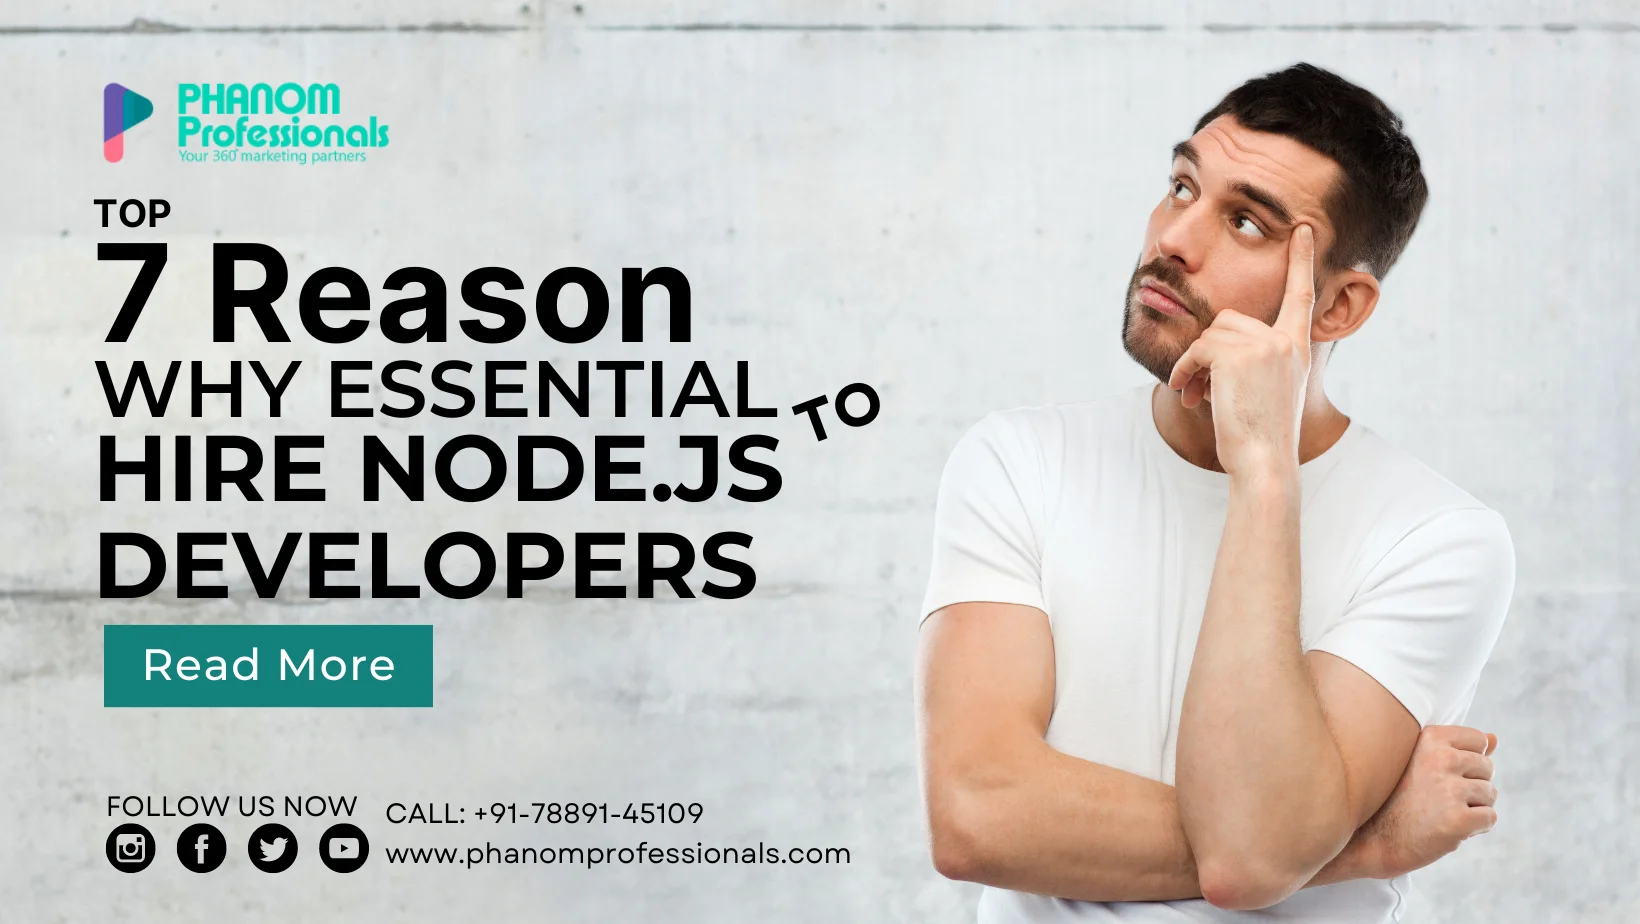 Hire node.js developer